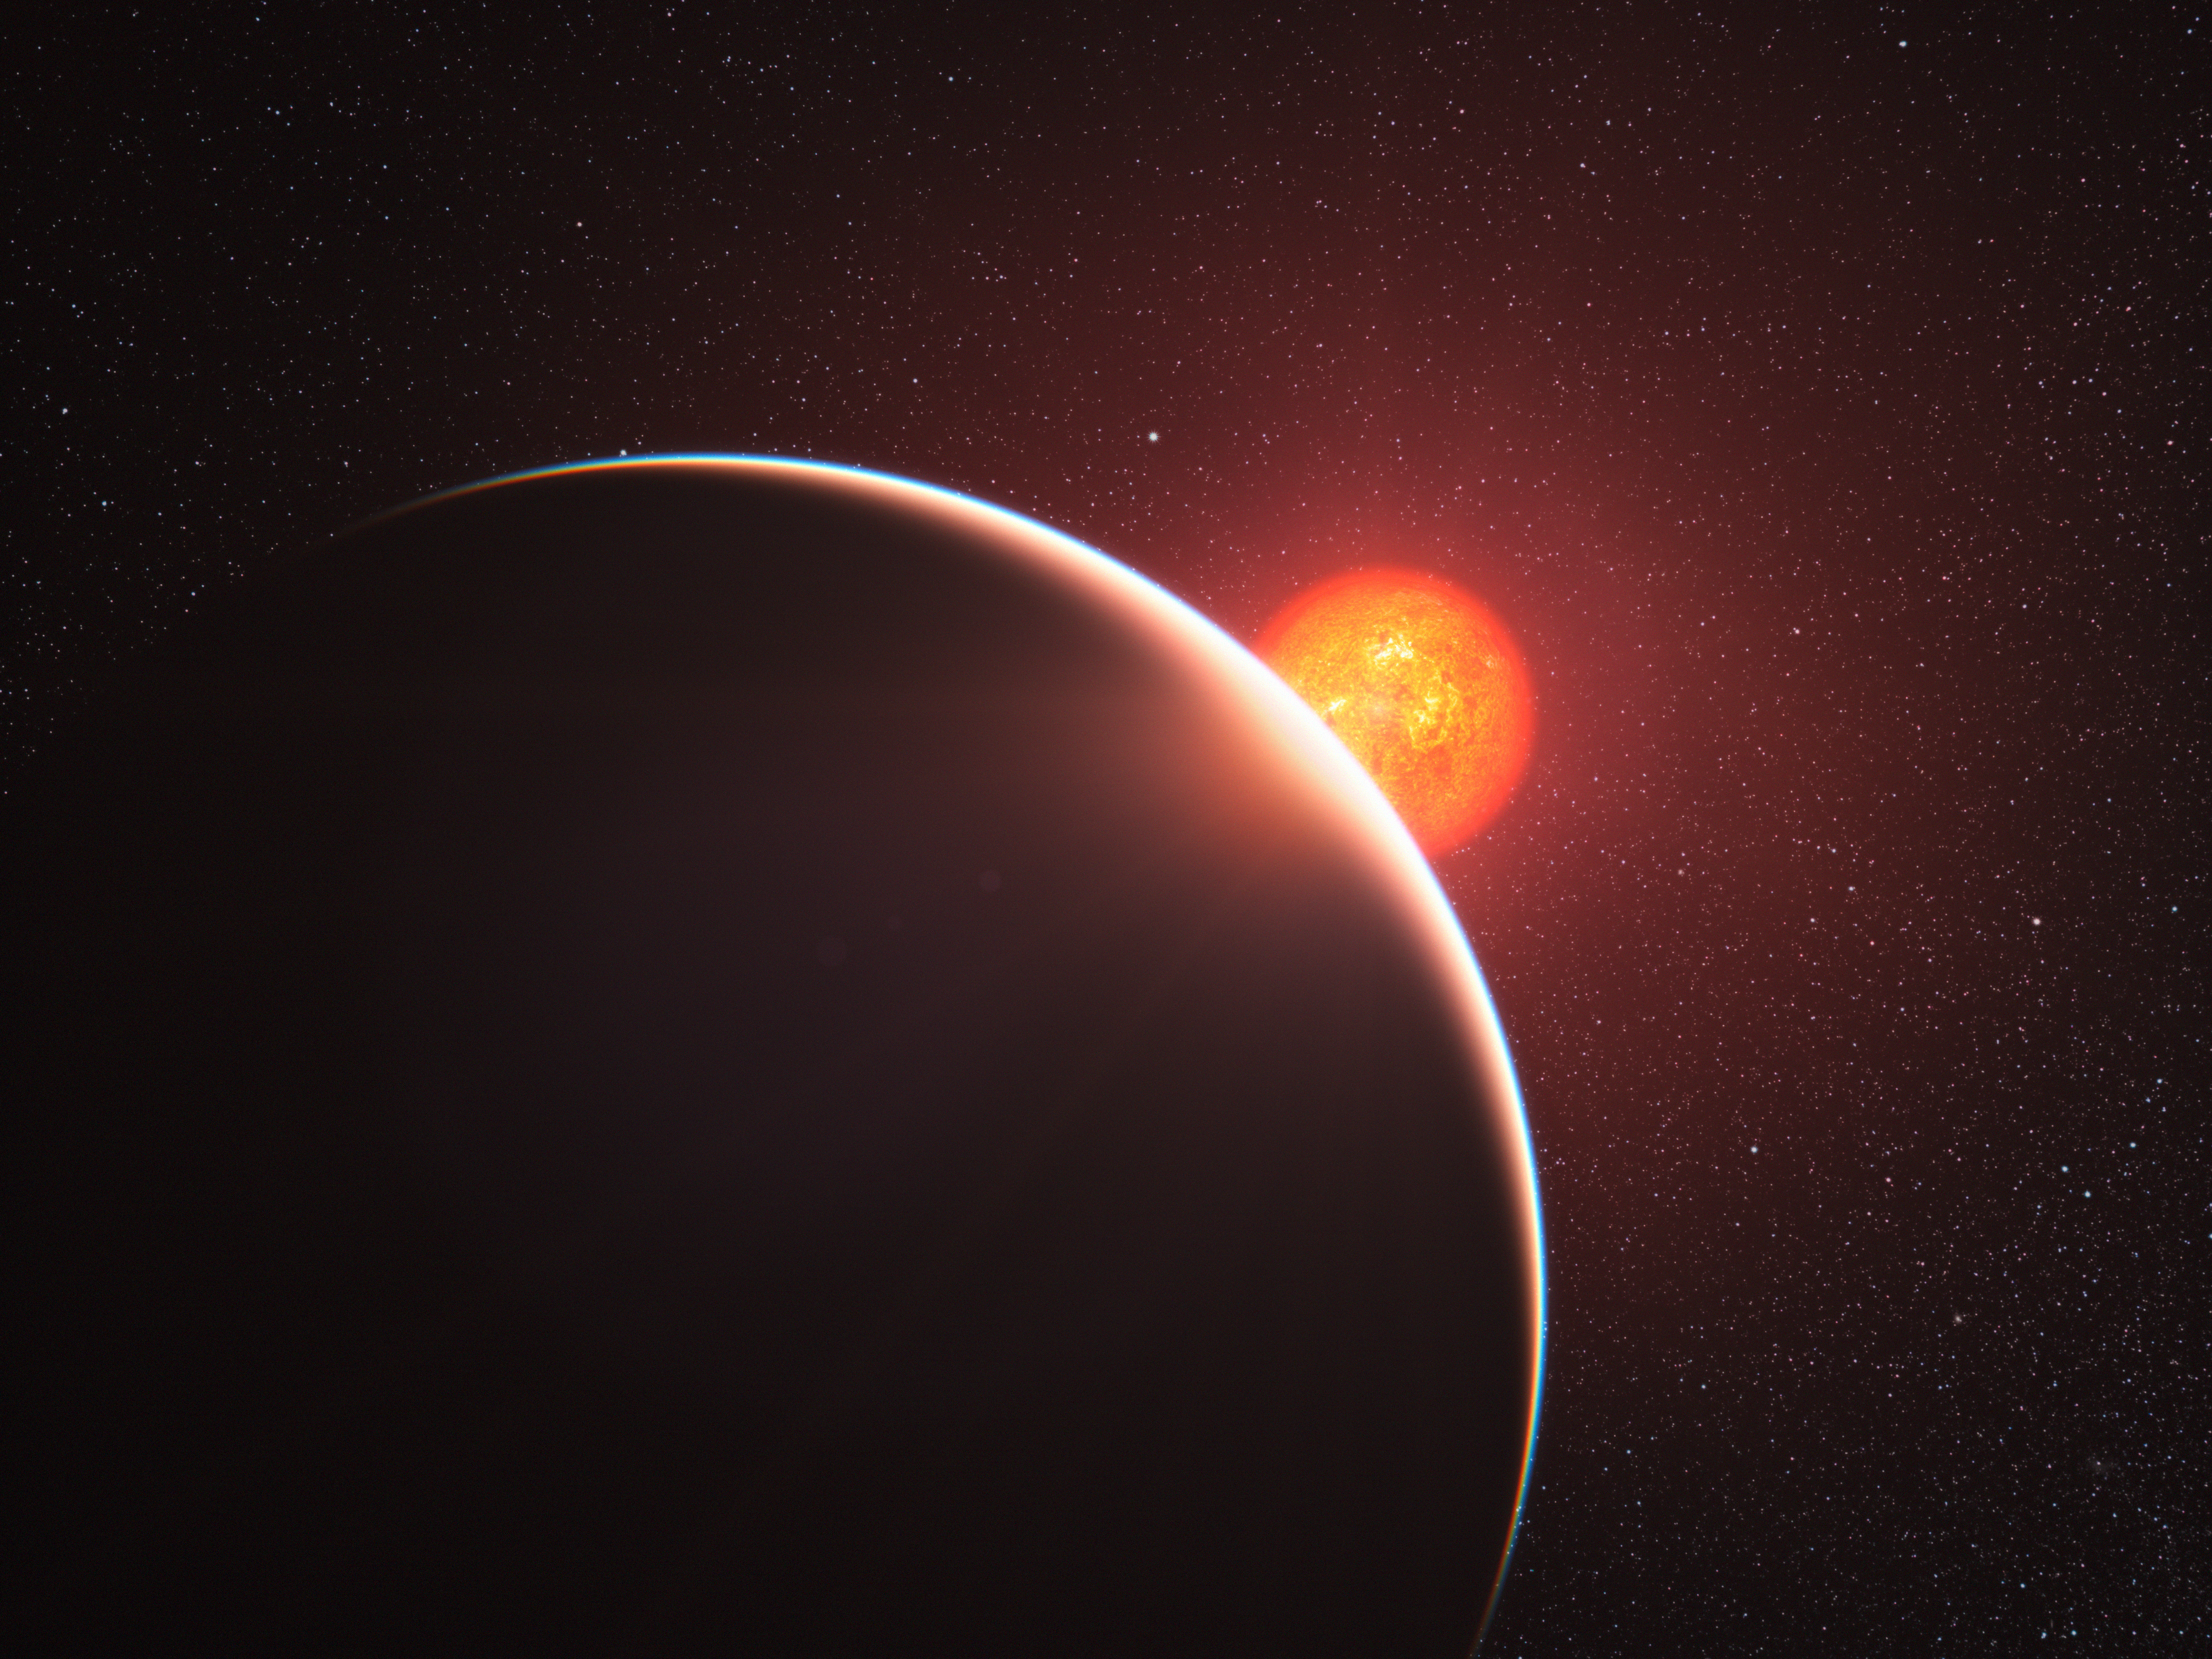 Астрономы Вашингтонского университета построили трёхмерную модель атмосферных явлений на таинственной экзопланете GJ1214b